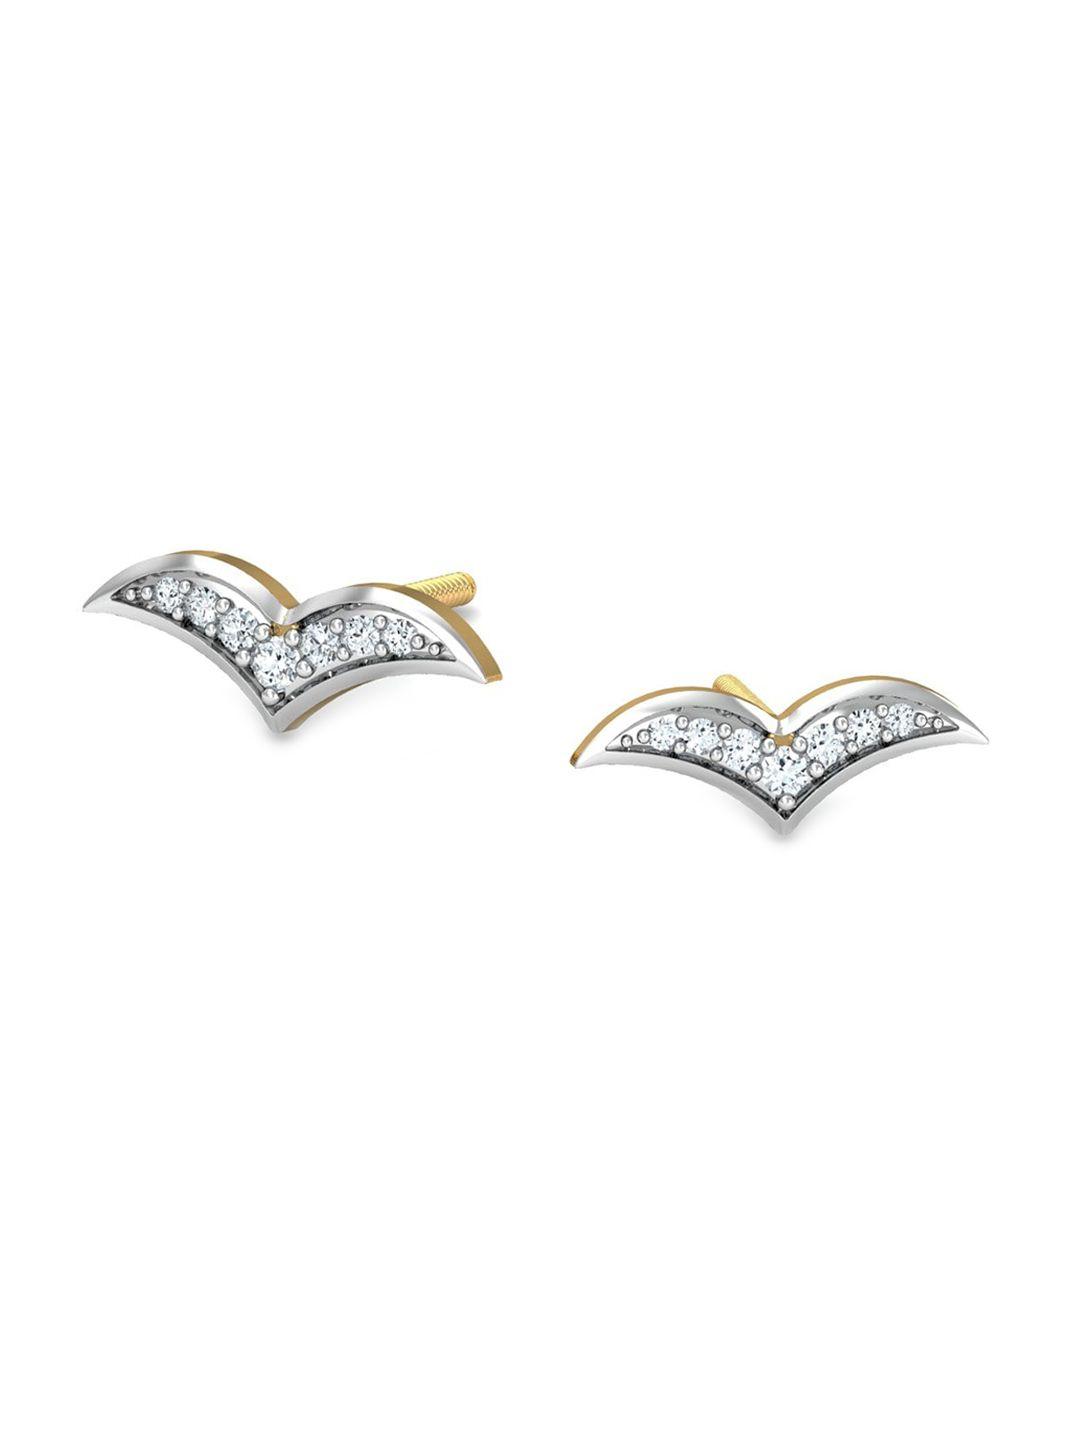 KUBERBOX Flying Bird 18KT Gold Diamond-Studded Earrings- 0.89gm